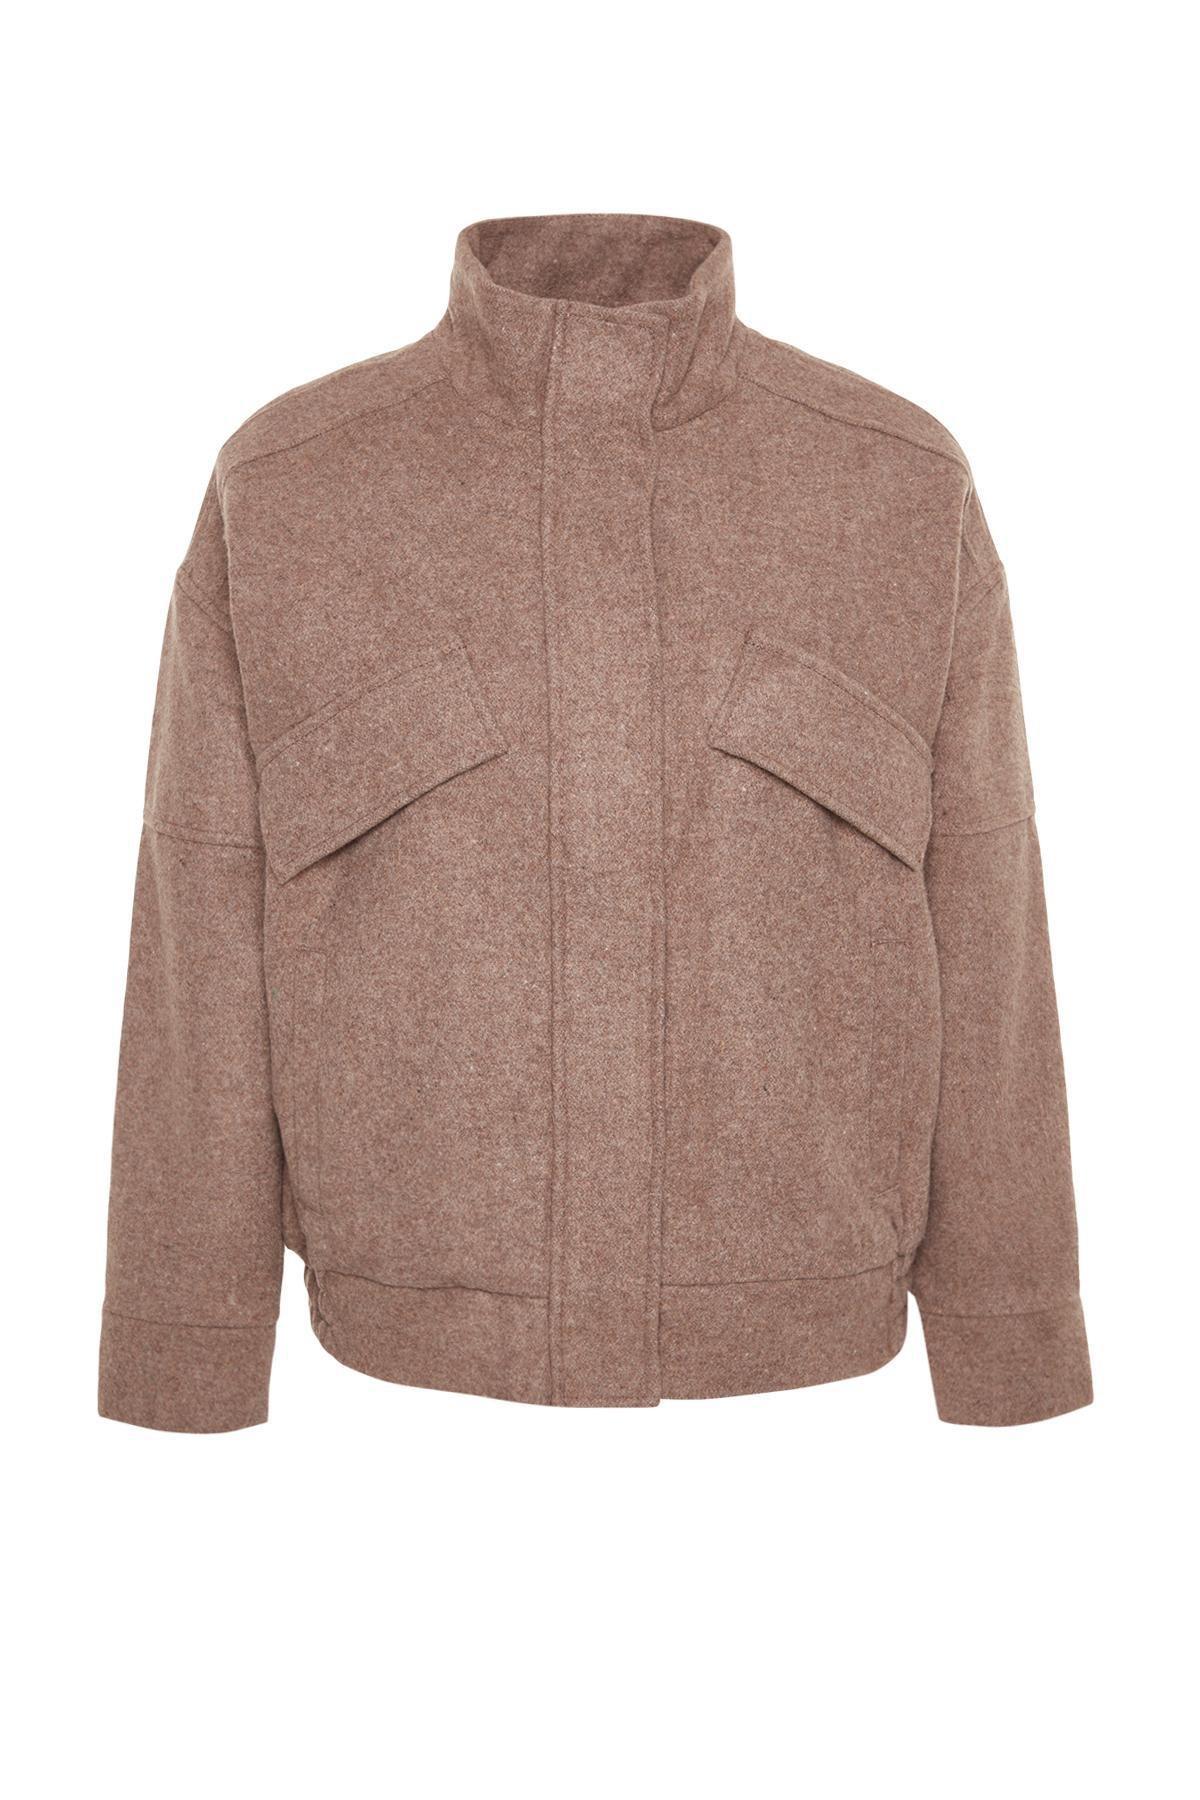 Trendyol - Brown Oversize Jacket Coat